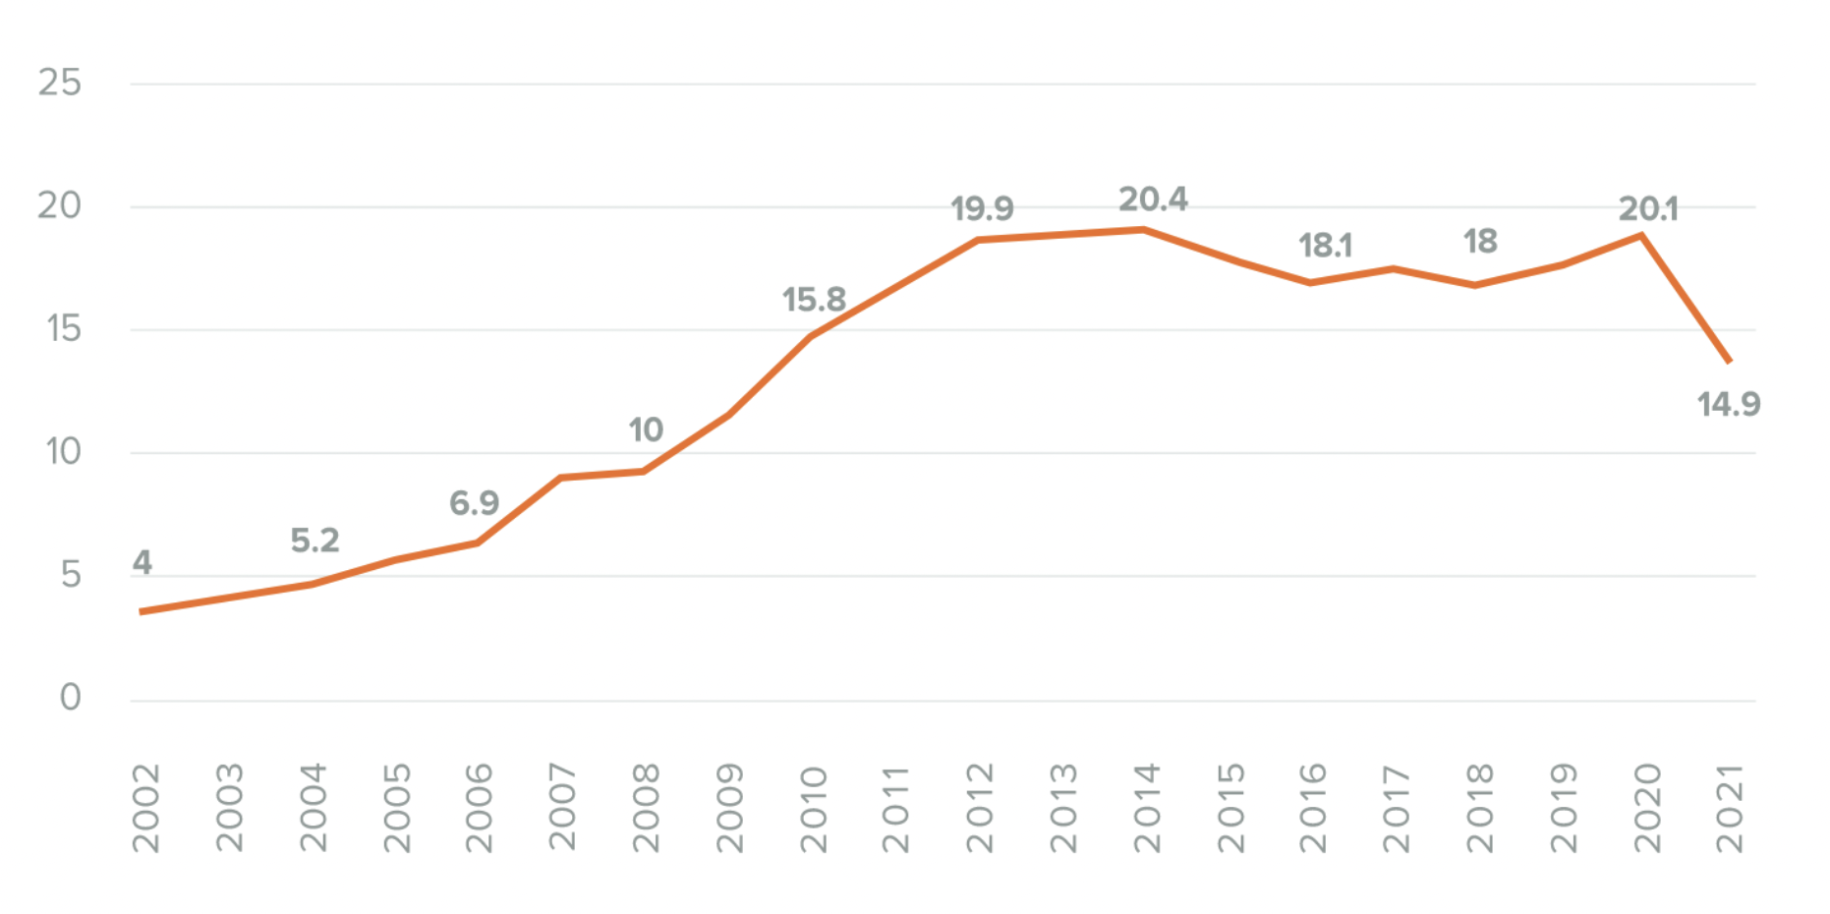 图表显示了阿富汗如何在不到一年的时间里失去了超过10年的经济增长。